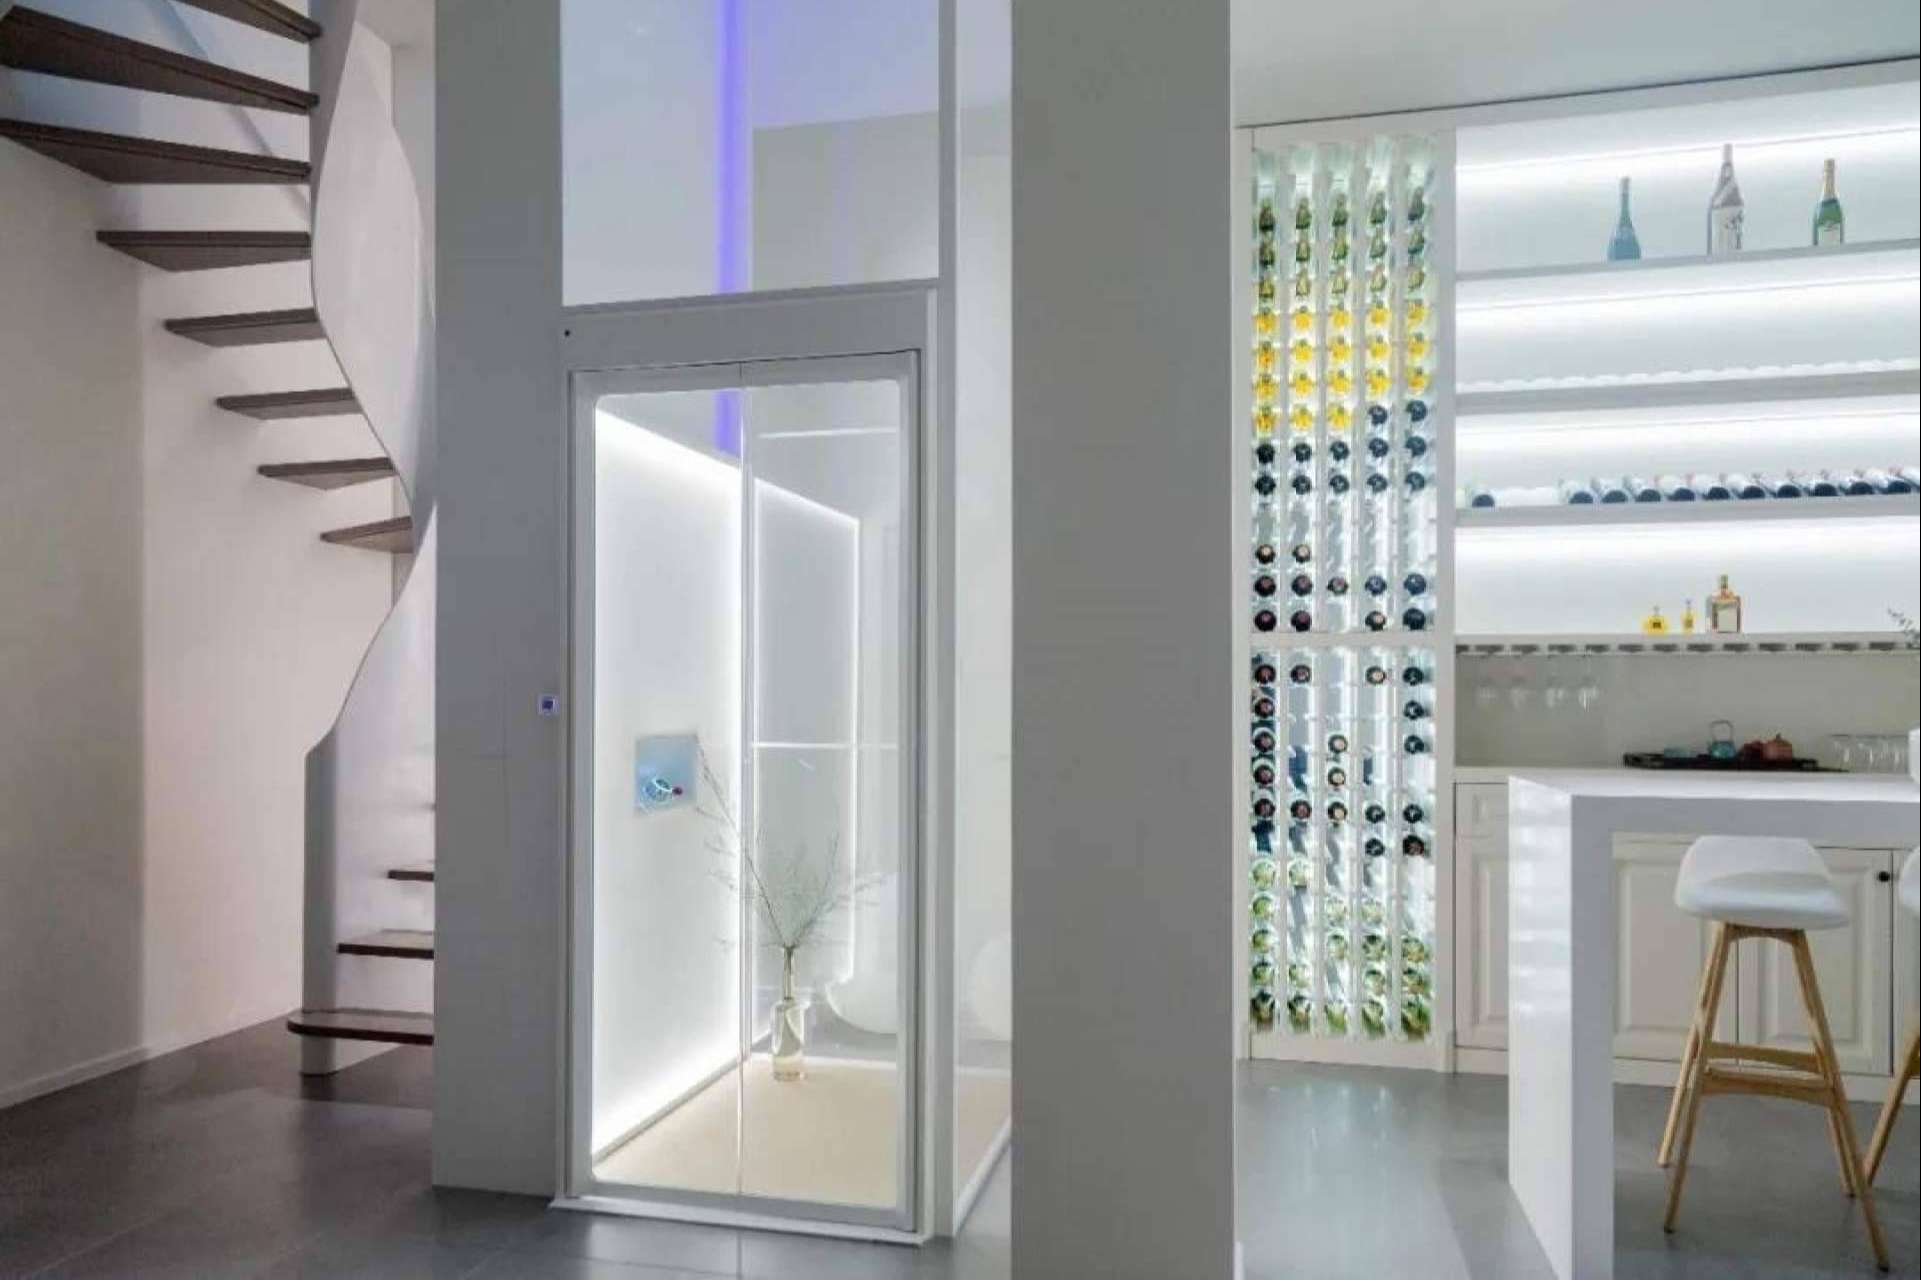 Aritco fabrica ascensores unifamiliares que se adaptan a cualquier necesidad